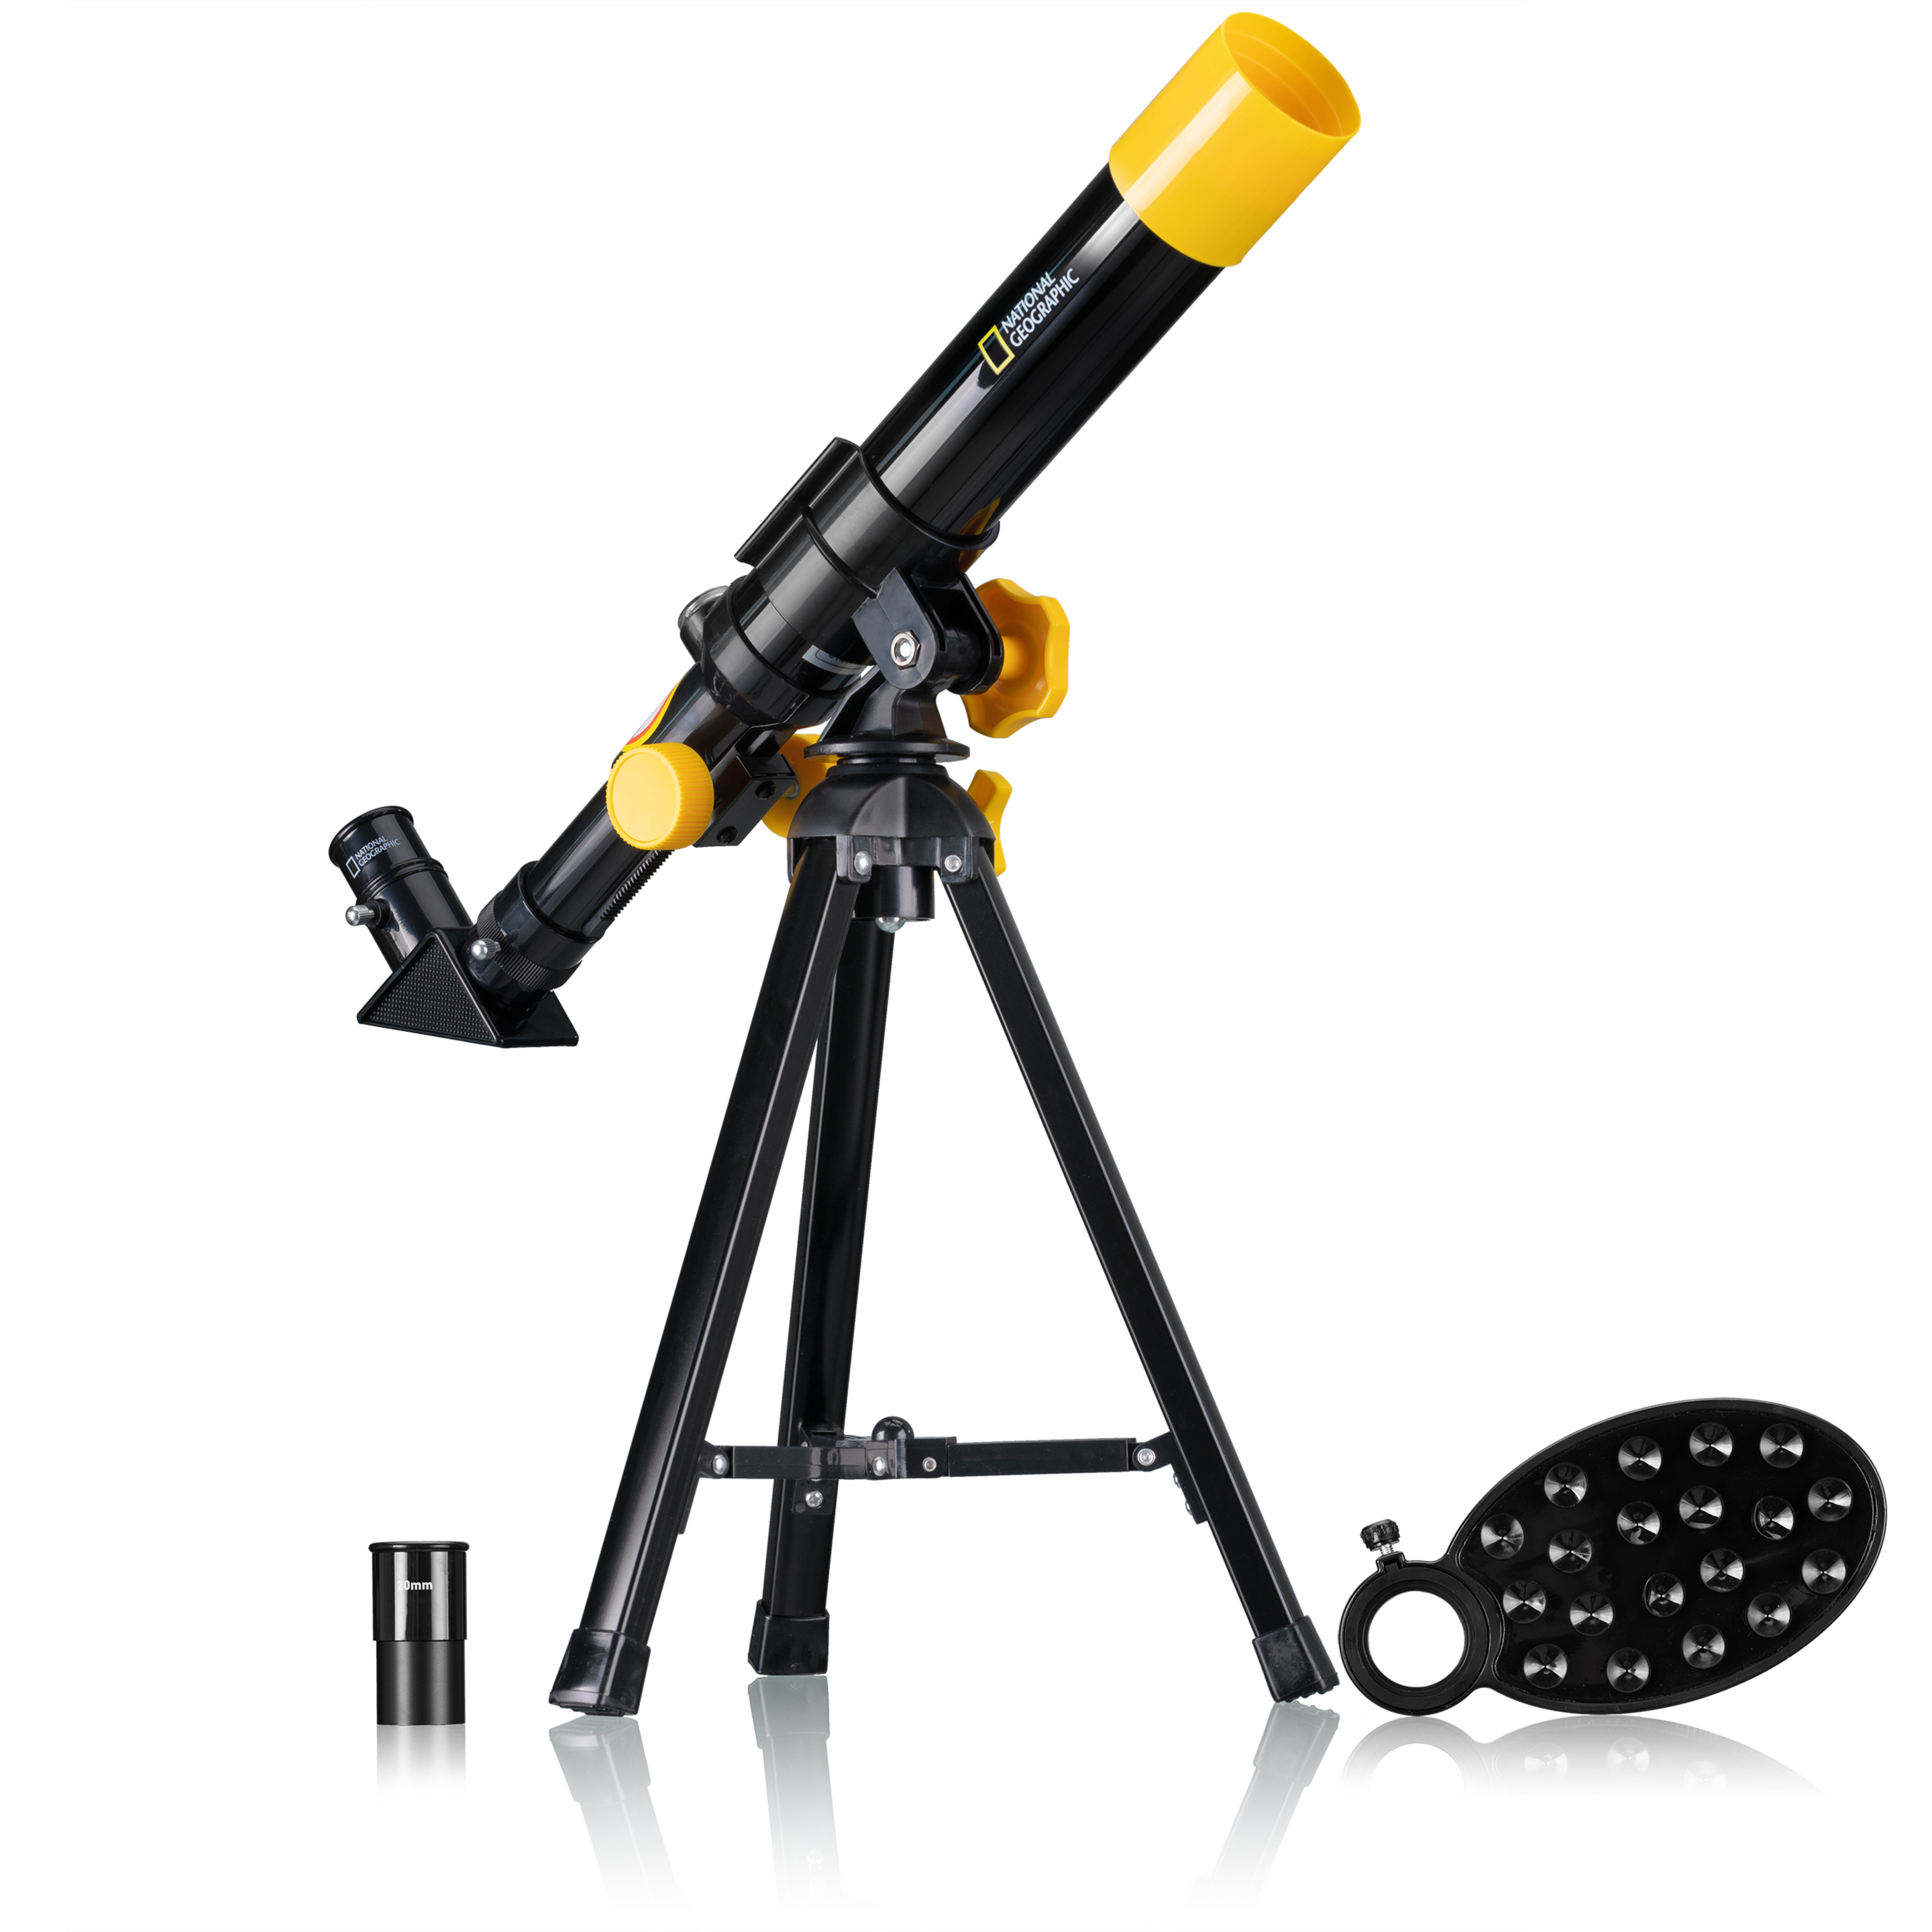 Pack Explorer De N.geographic -incluye Telescopio+prismático+detector De Metales - negro - 